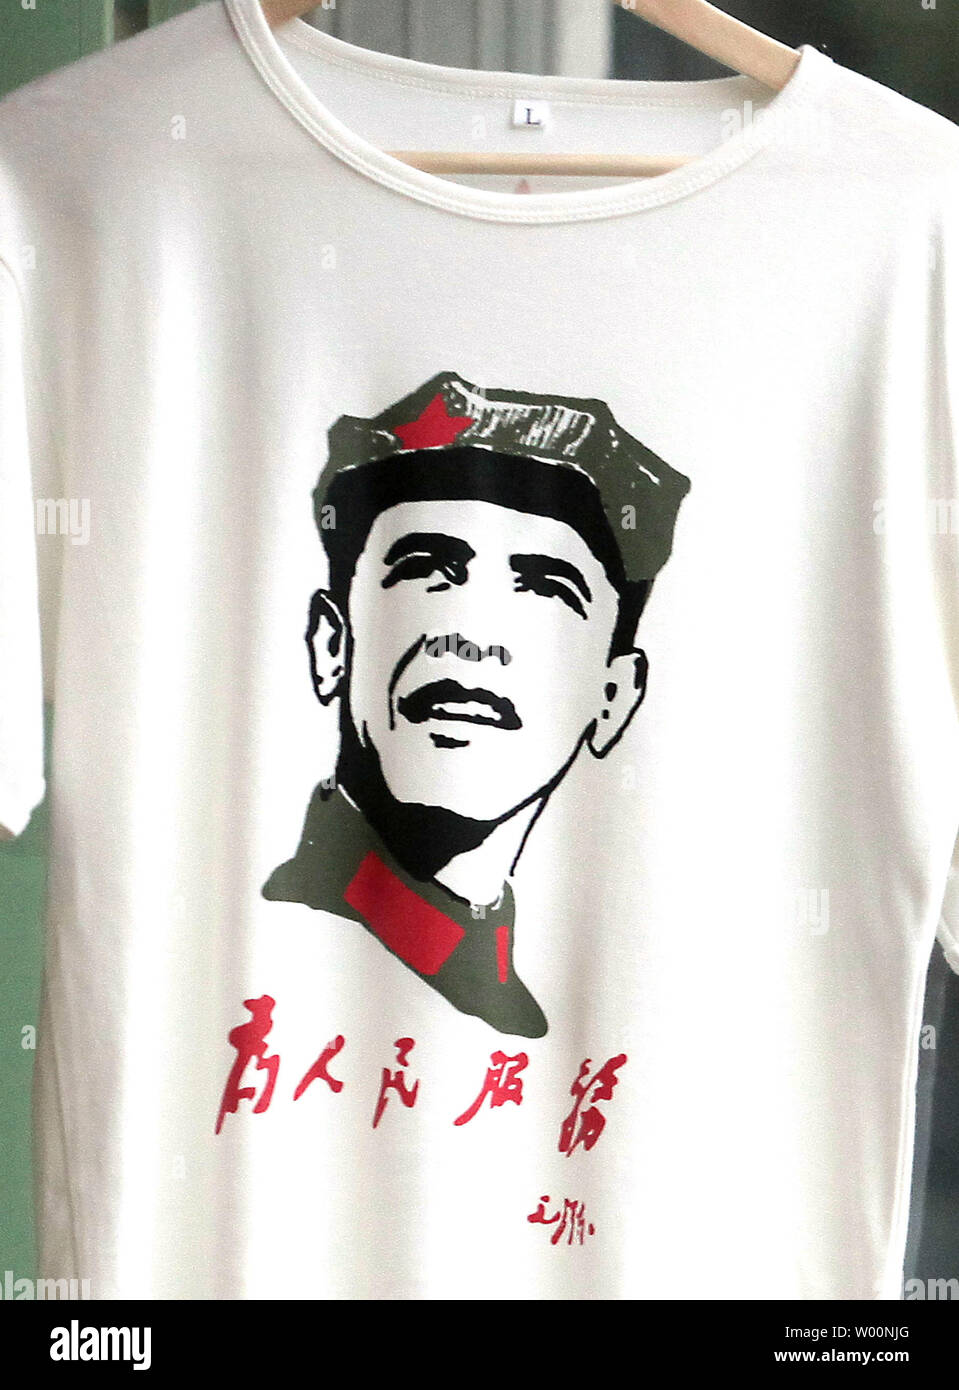 Mao t shirt immagini e fotografie stock ad alta risoluzione - Alamy